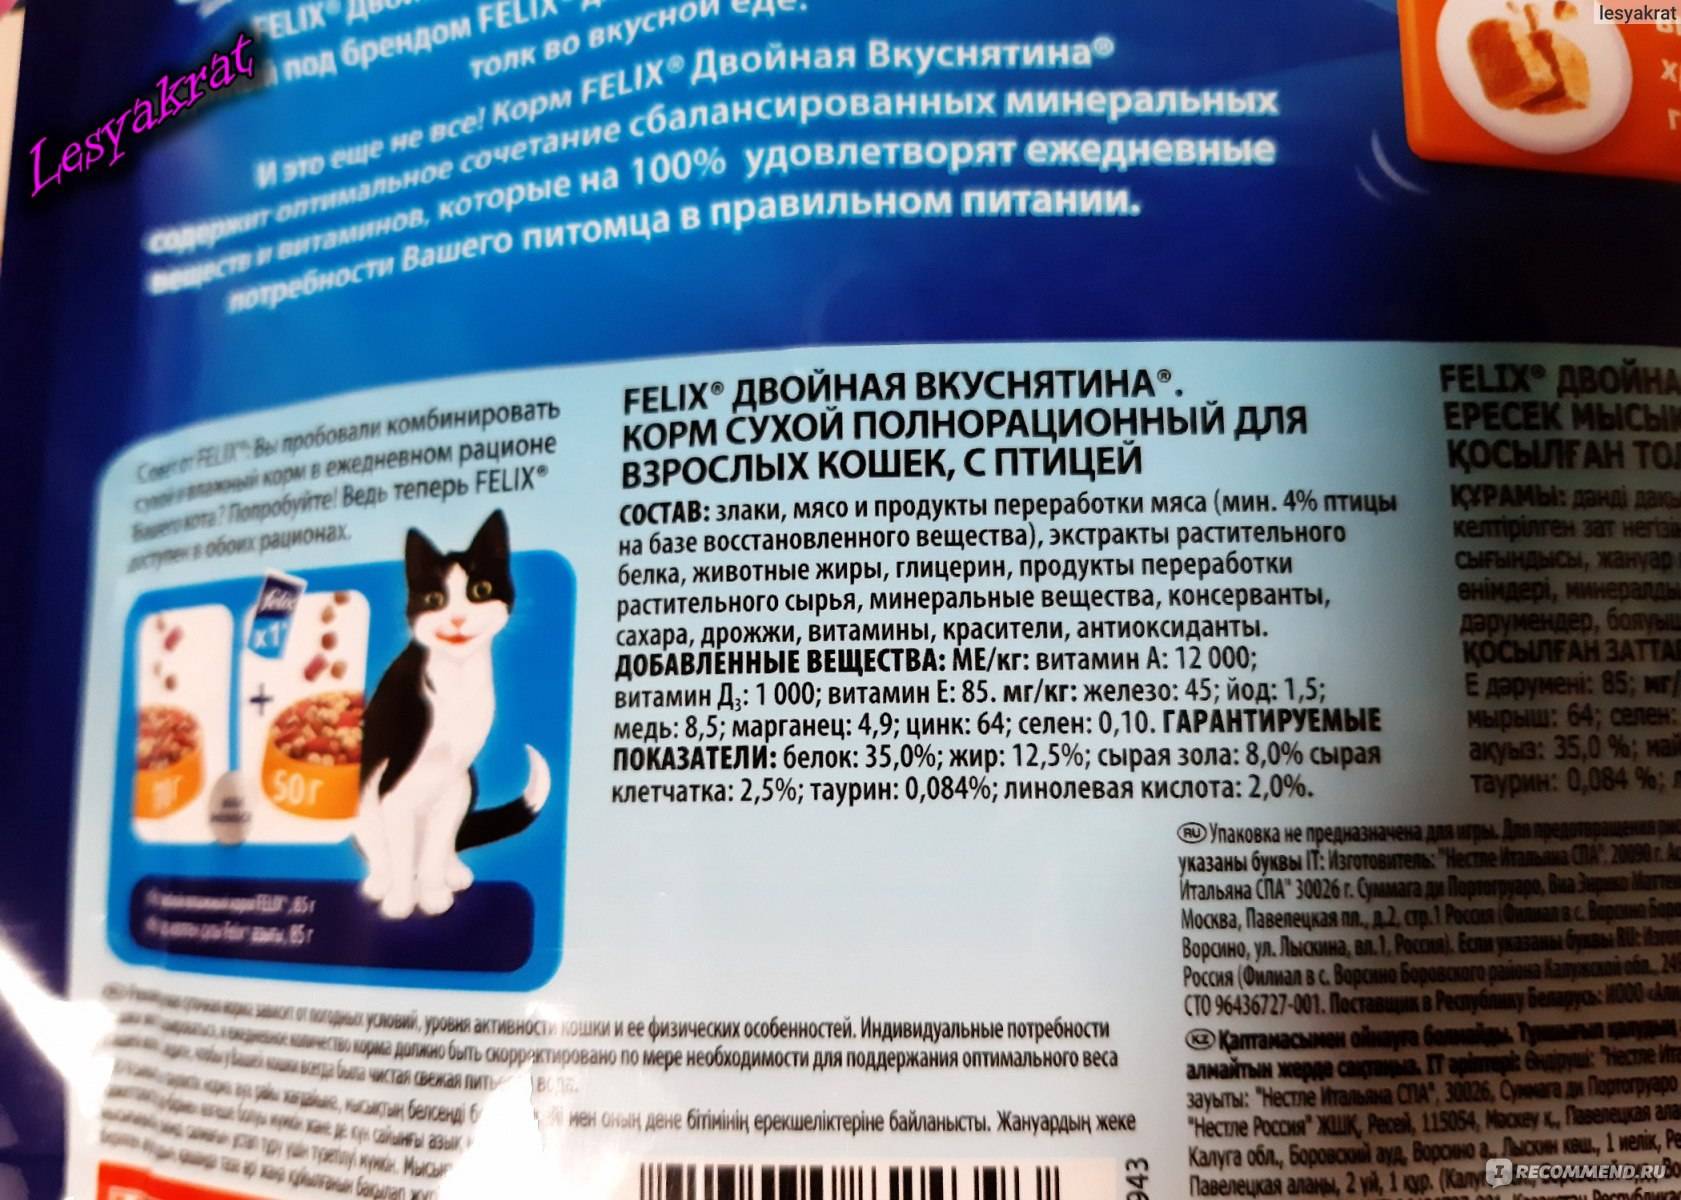 ᐉ обзор корма для кошек mauricio - ➡ motildazoo.ru